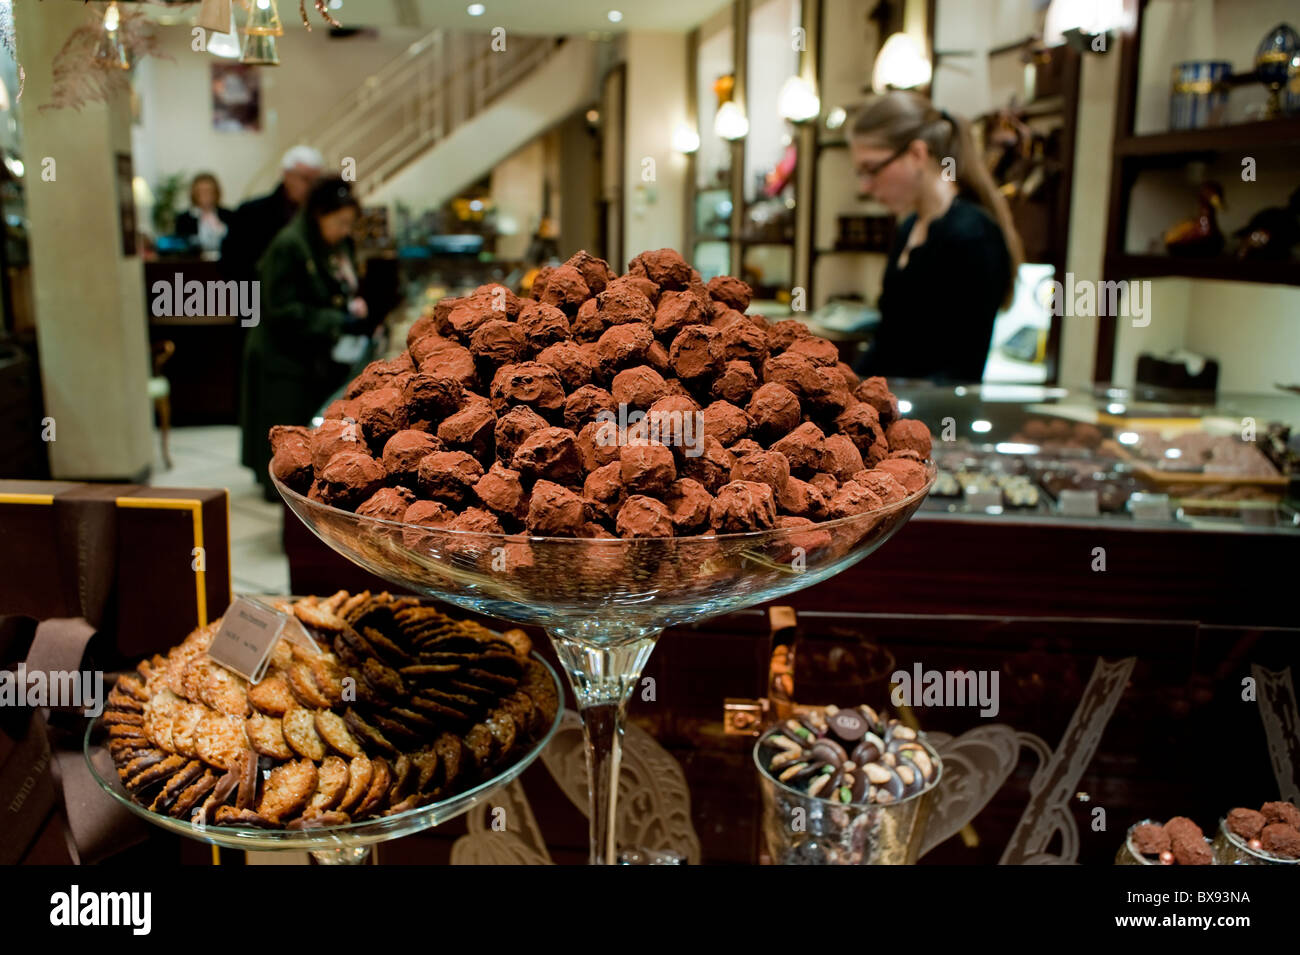 Paris, Frankreich, Lebensmittel einkaufen, "Michel Cluizel" französische  Schokolade Schaufenster Trüffeln auf dem Display, Chocolatier  Stockfotografie - Alamy